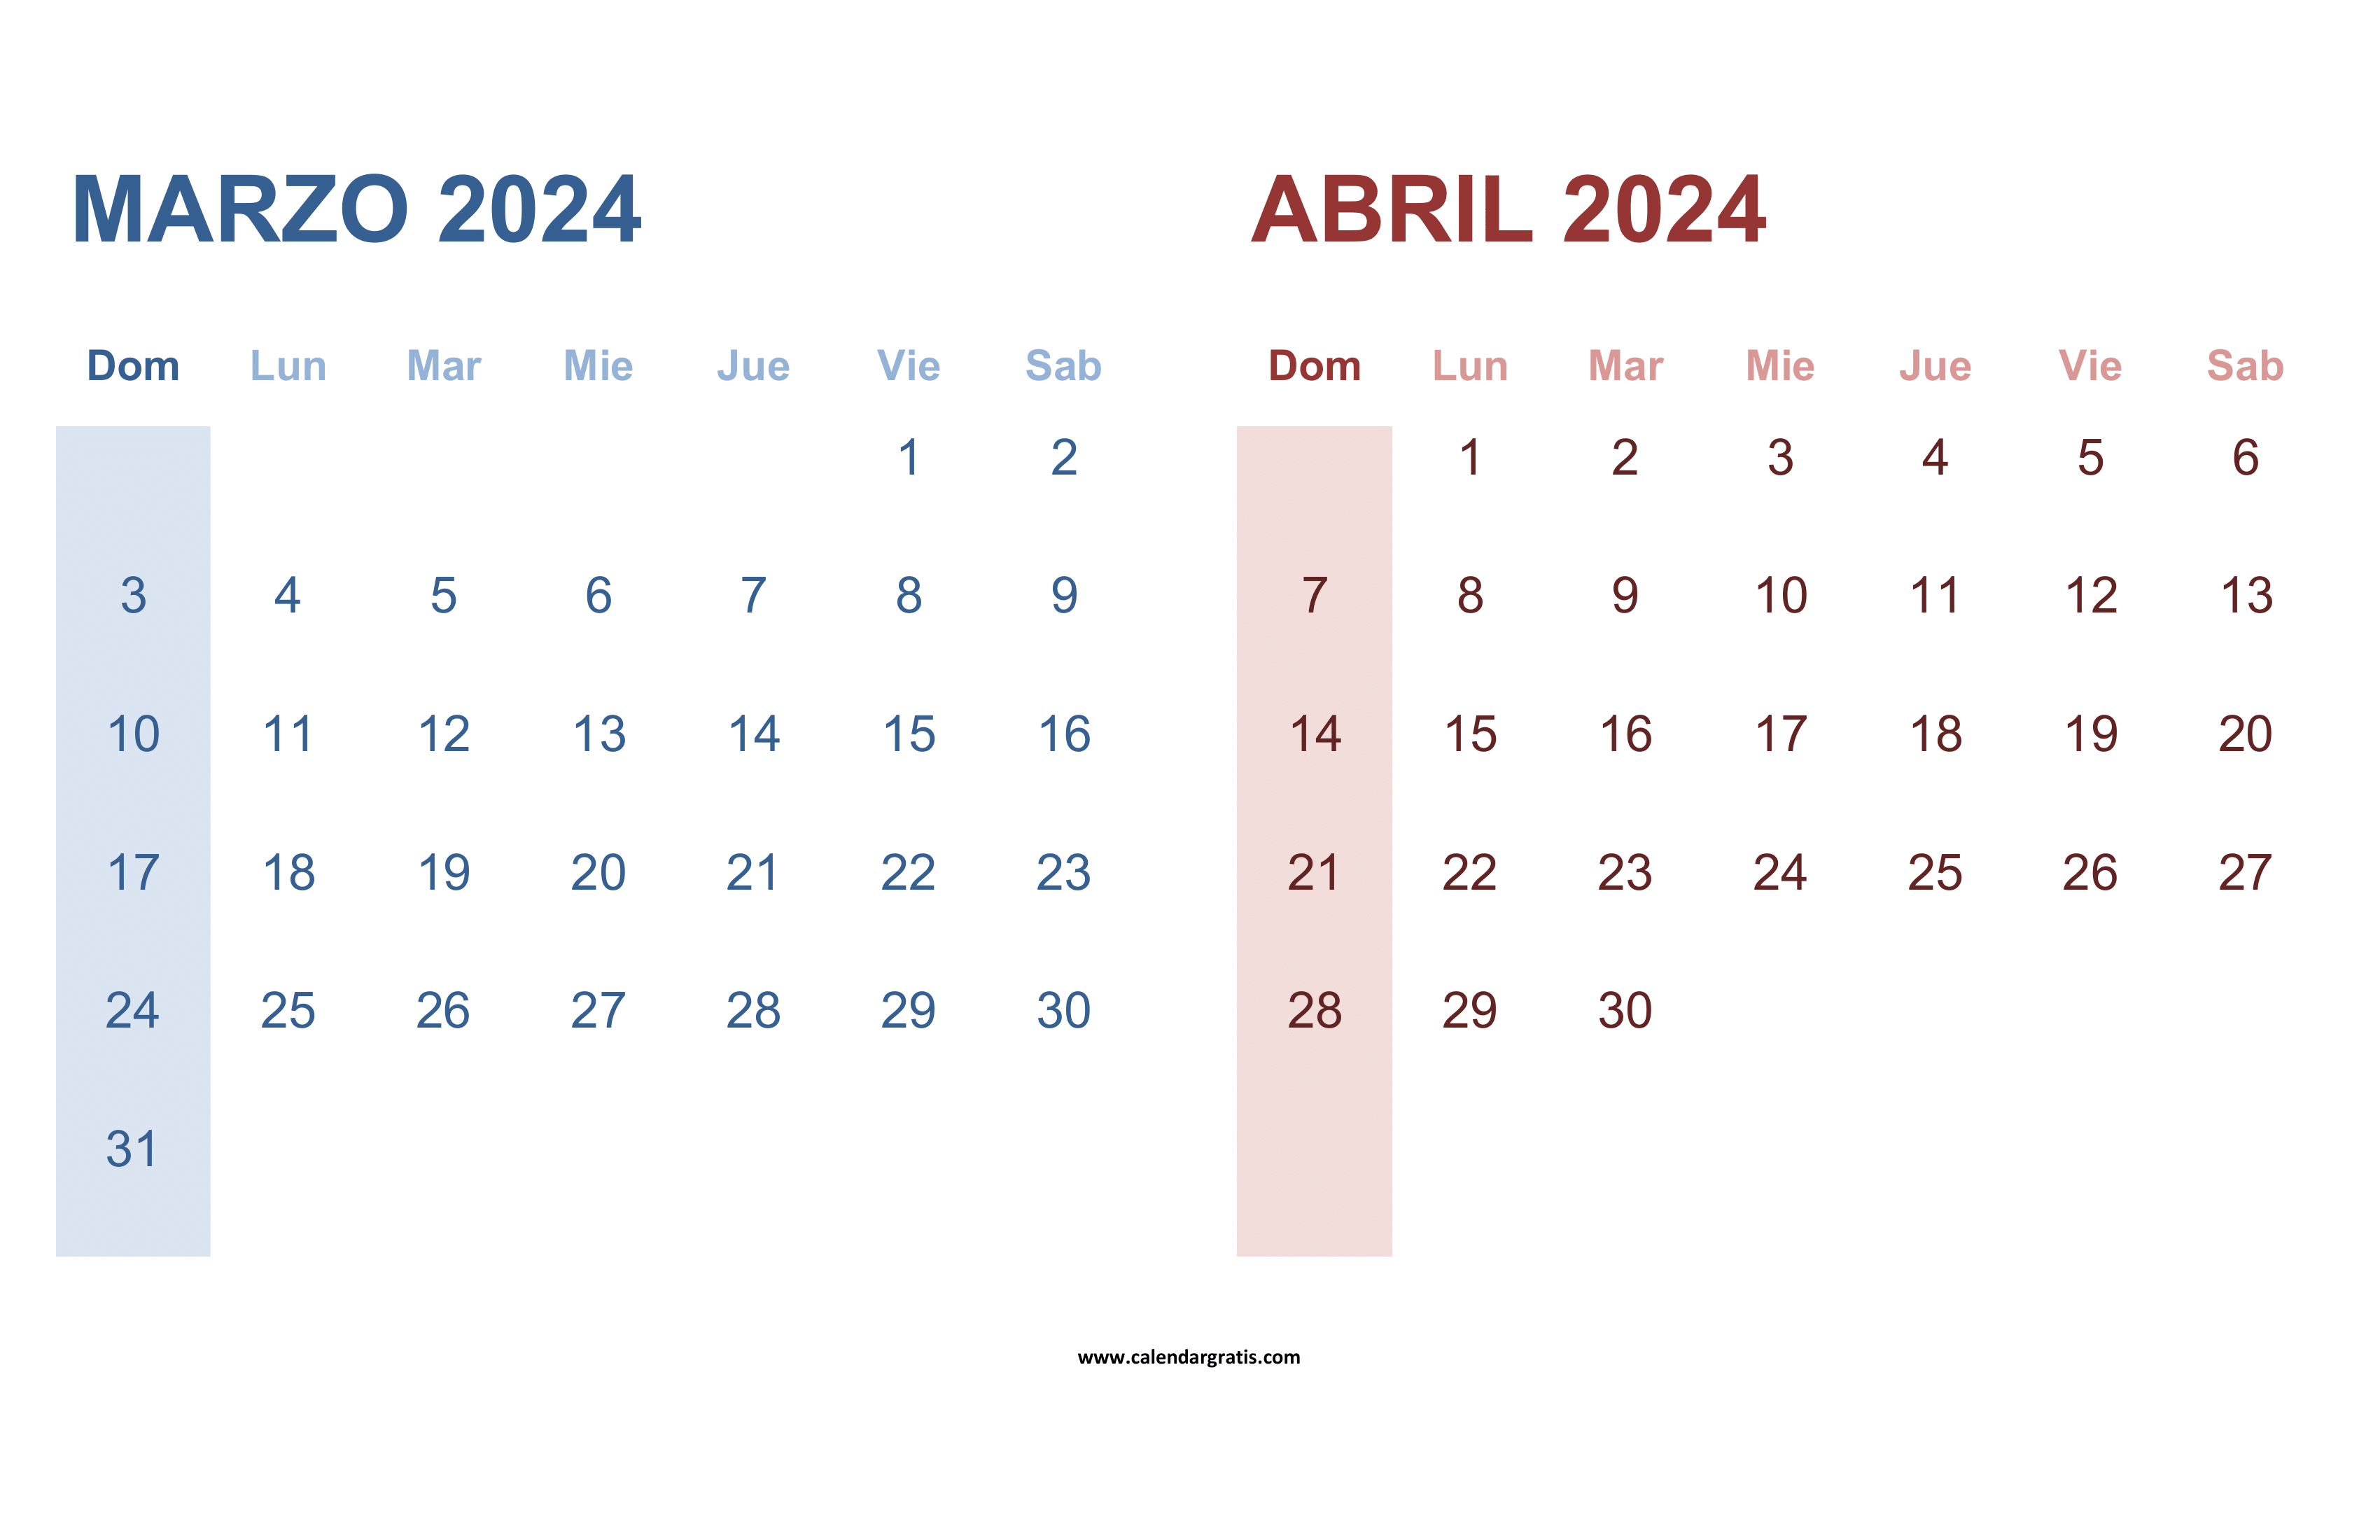 Calendario de Marzo Abril 2024 gratis